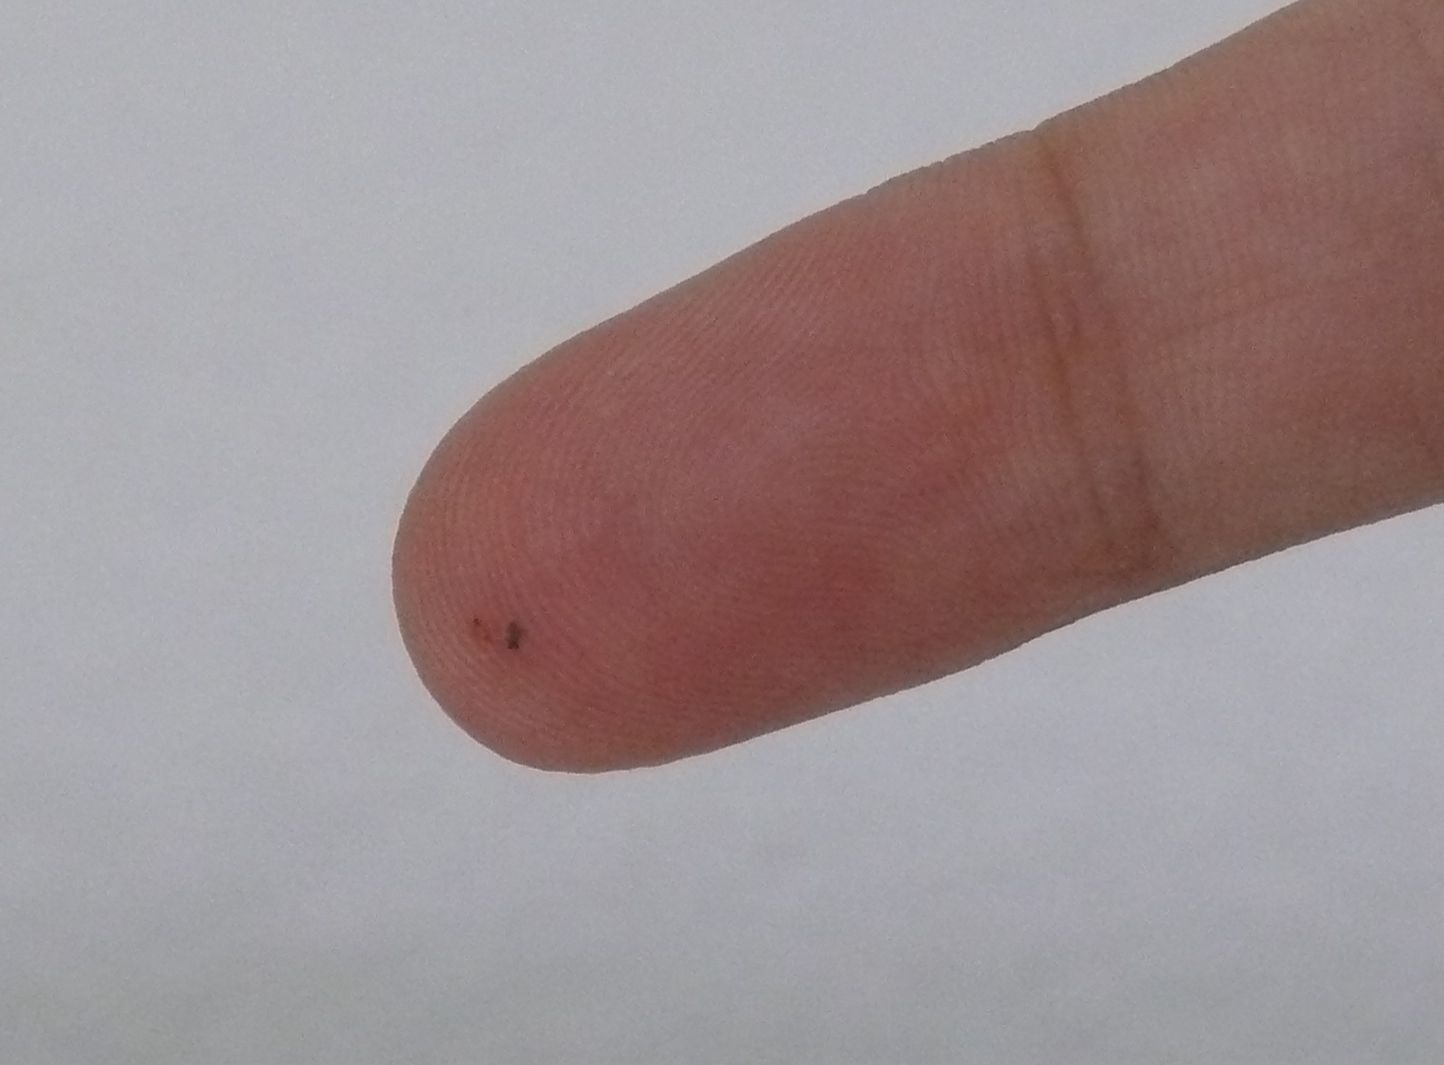 Splinter in a finger